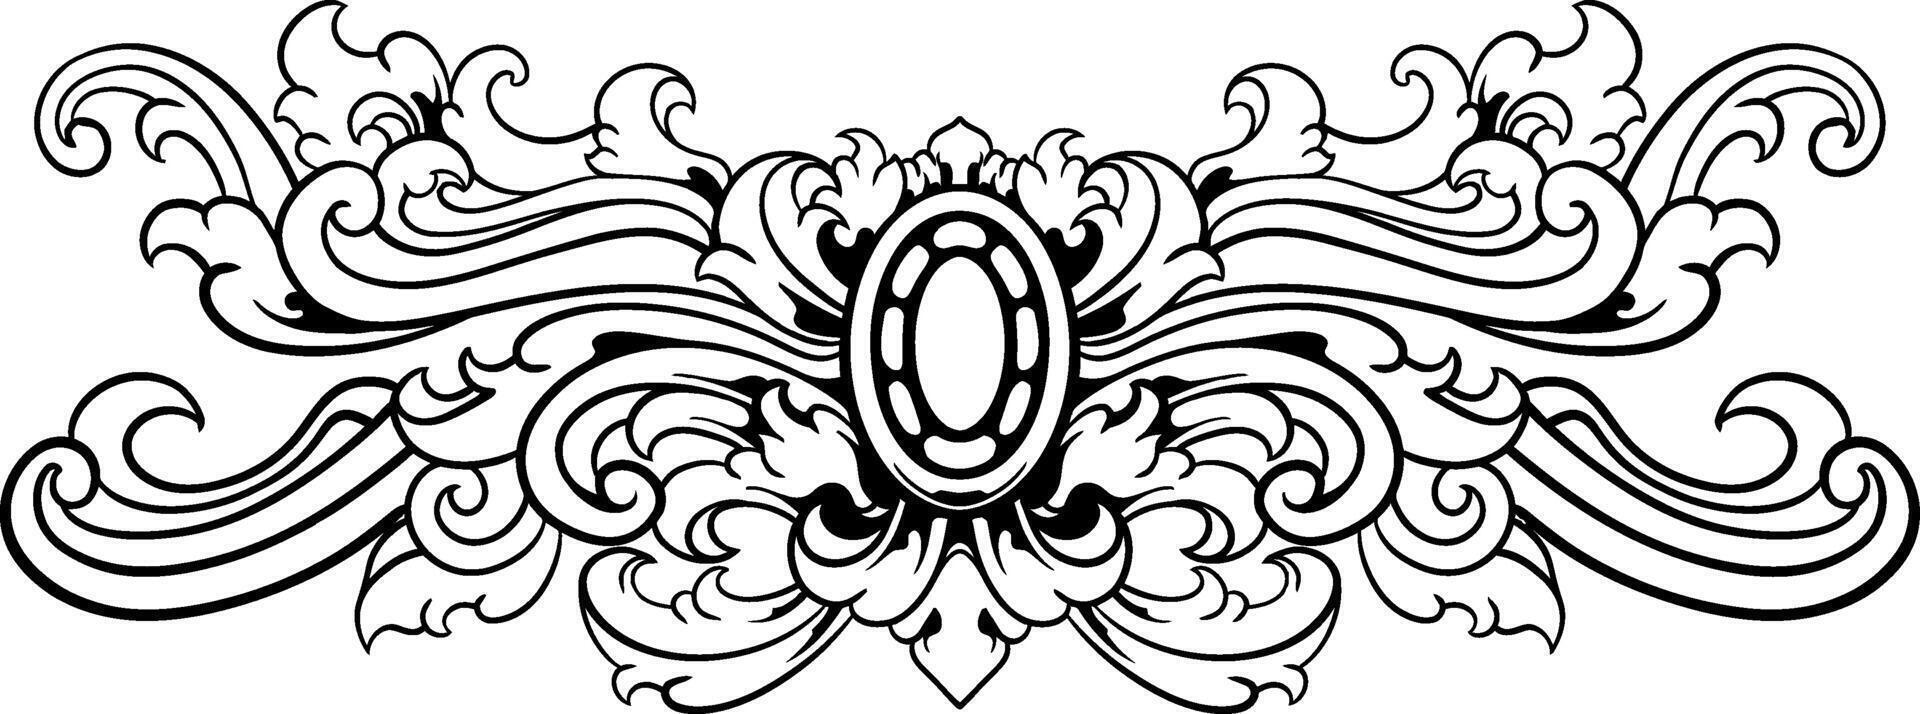 vintage barroco vitoriano quadro, Armação fronteira floral enfeite folha rolagem gravado retro flor padronizar decorativo Projeto tatuagem Preto e branco vetor